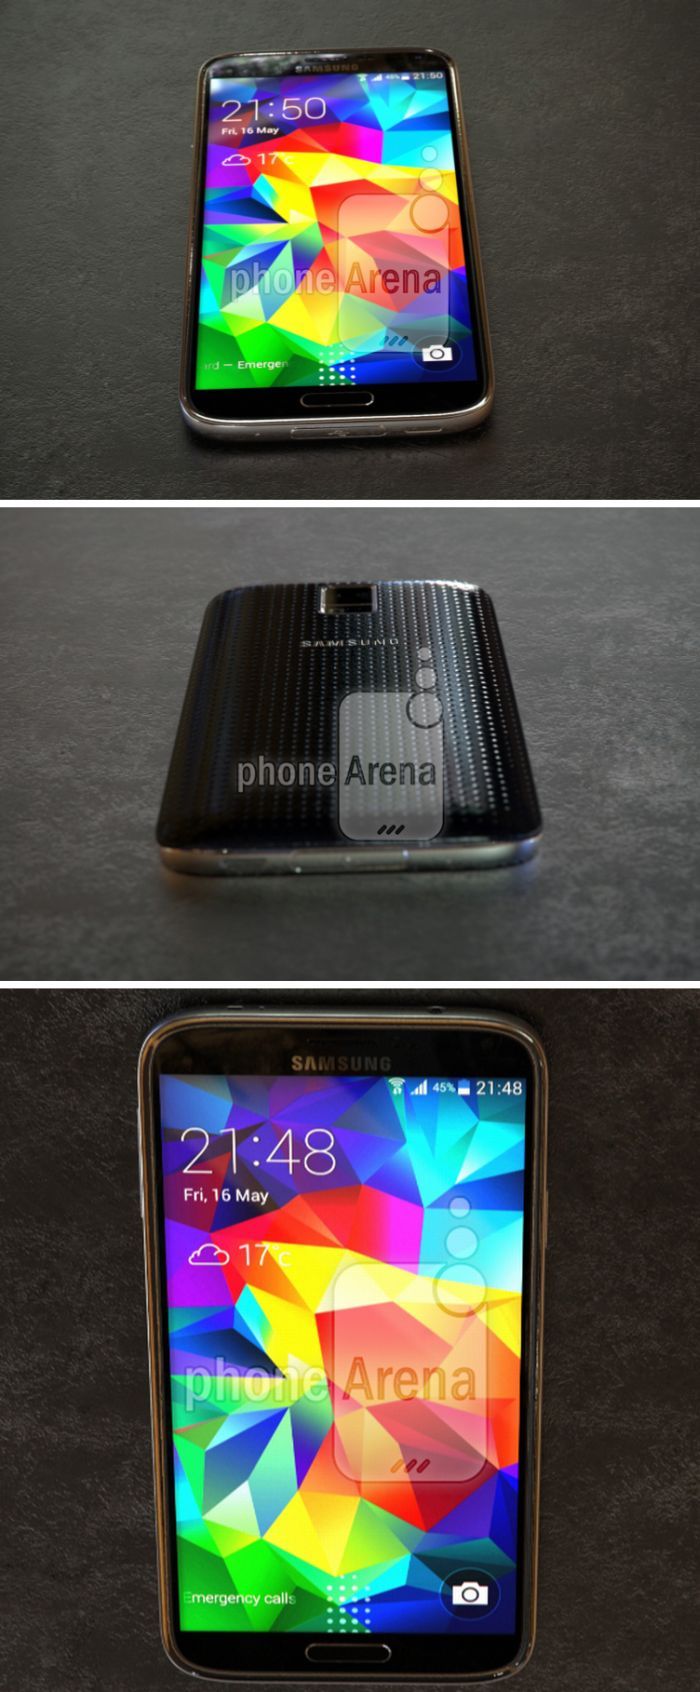 Így néz ki az alumínium Galaxy S5 Prime